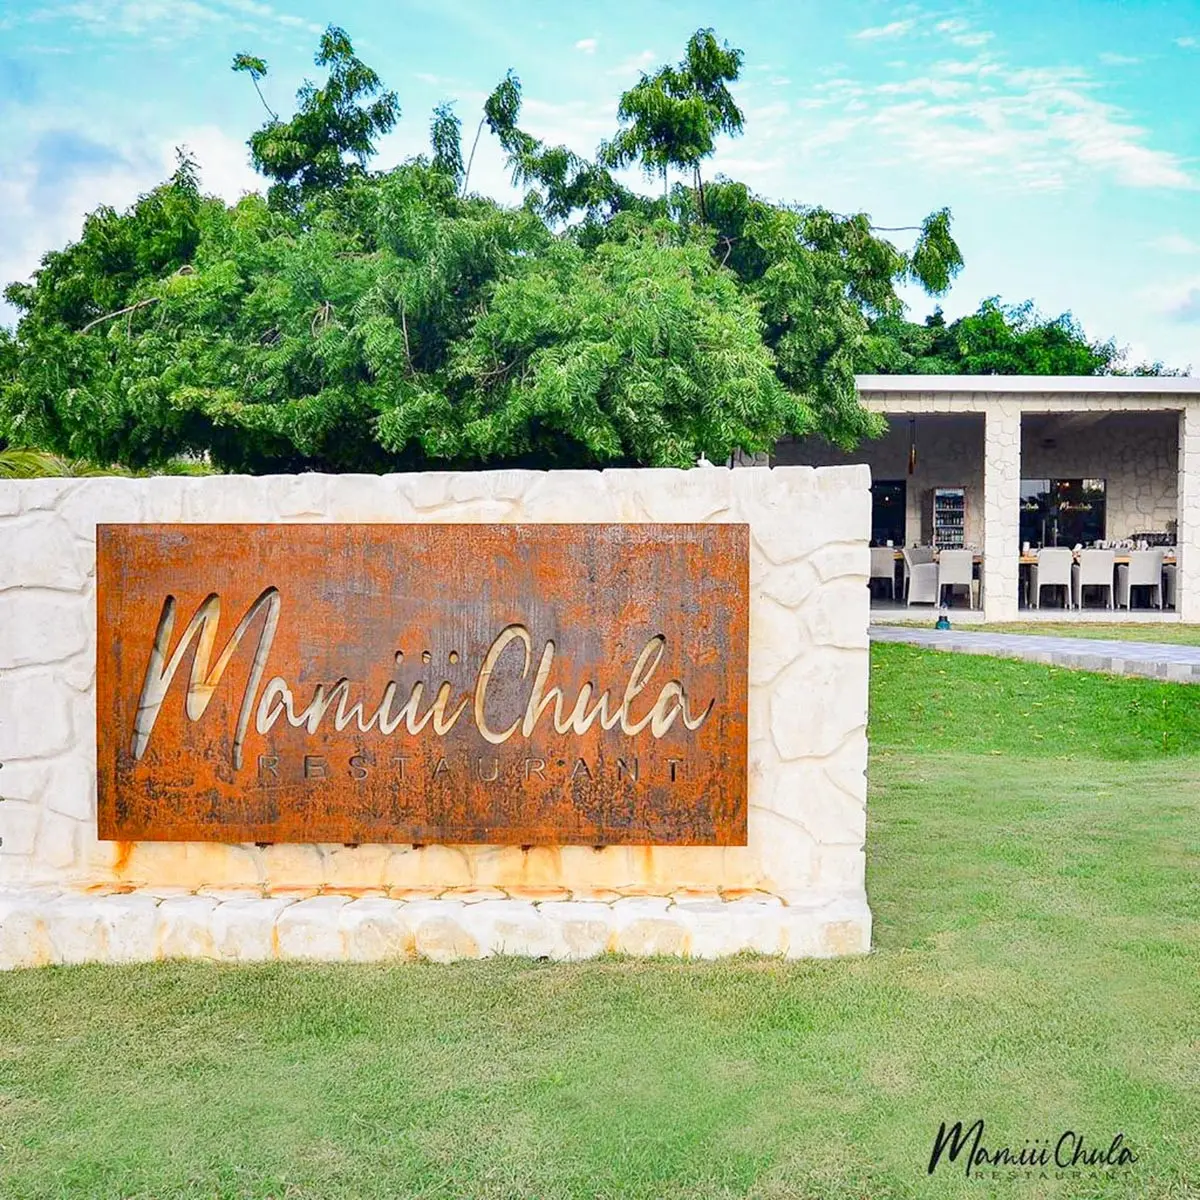 Mamiii Chula restaurant sign and logo at Playa Palmera Beach Resort